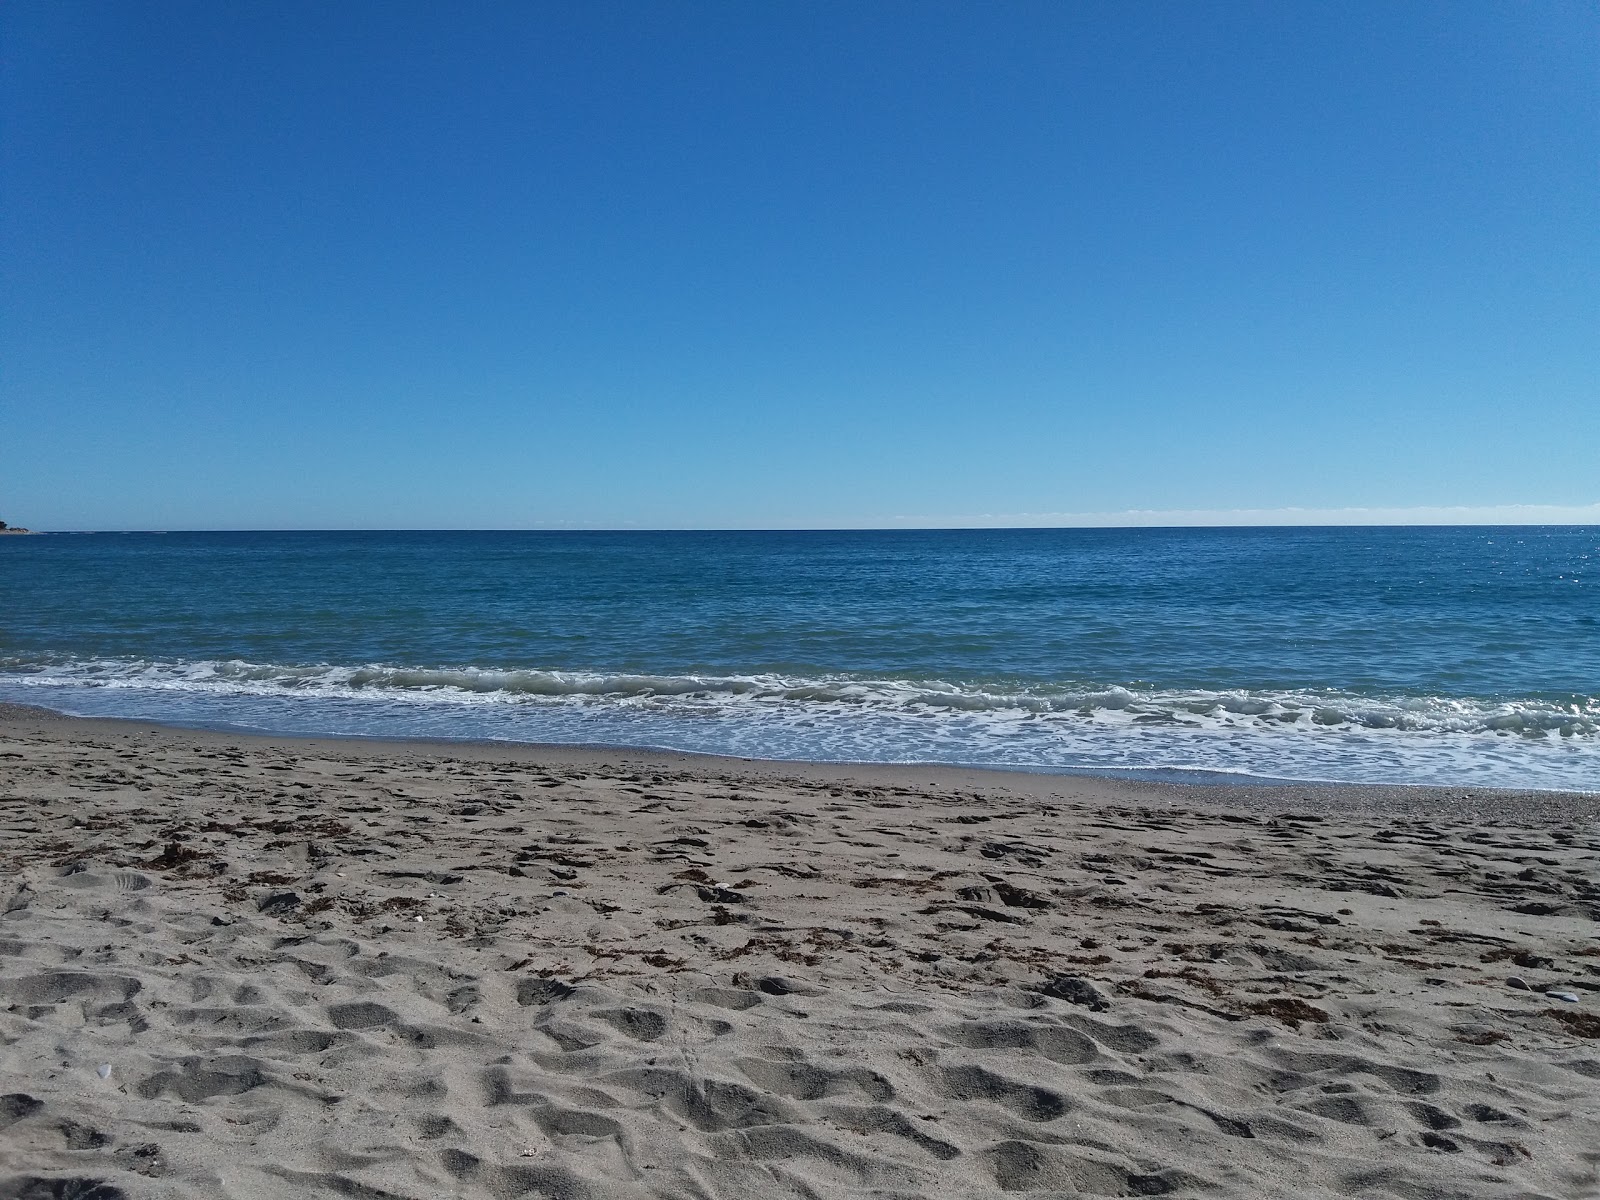 Foto af Playa de Quitapellejos - populært sted blandt afslapningskendere